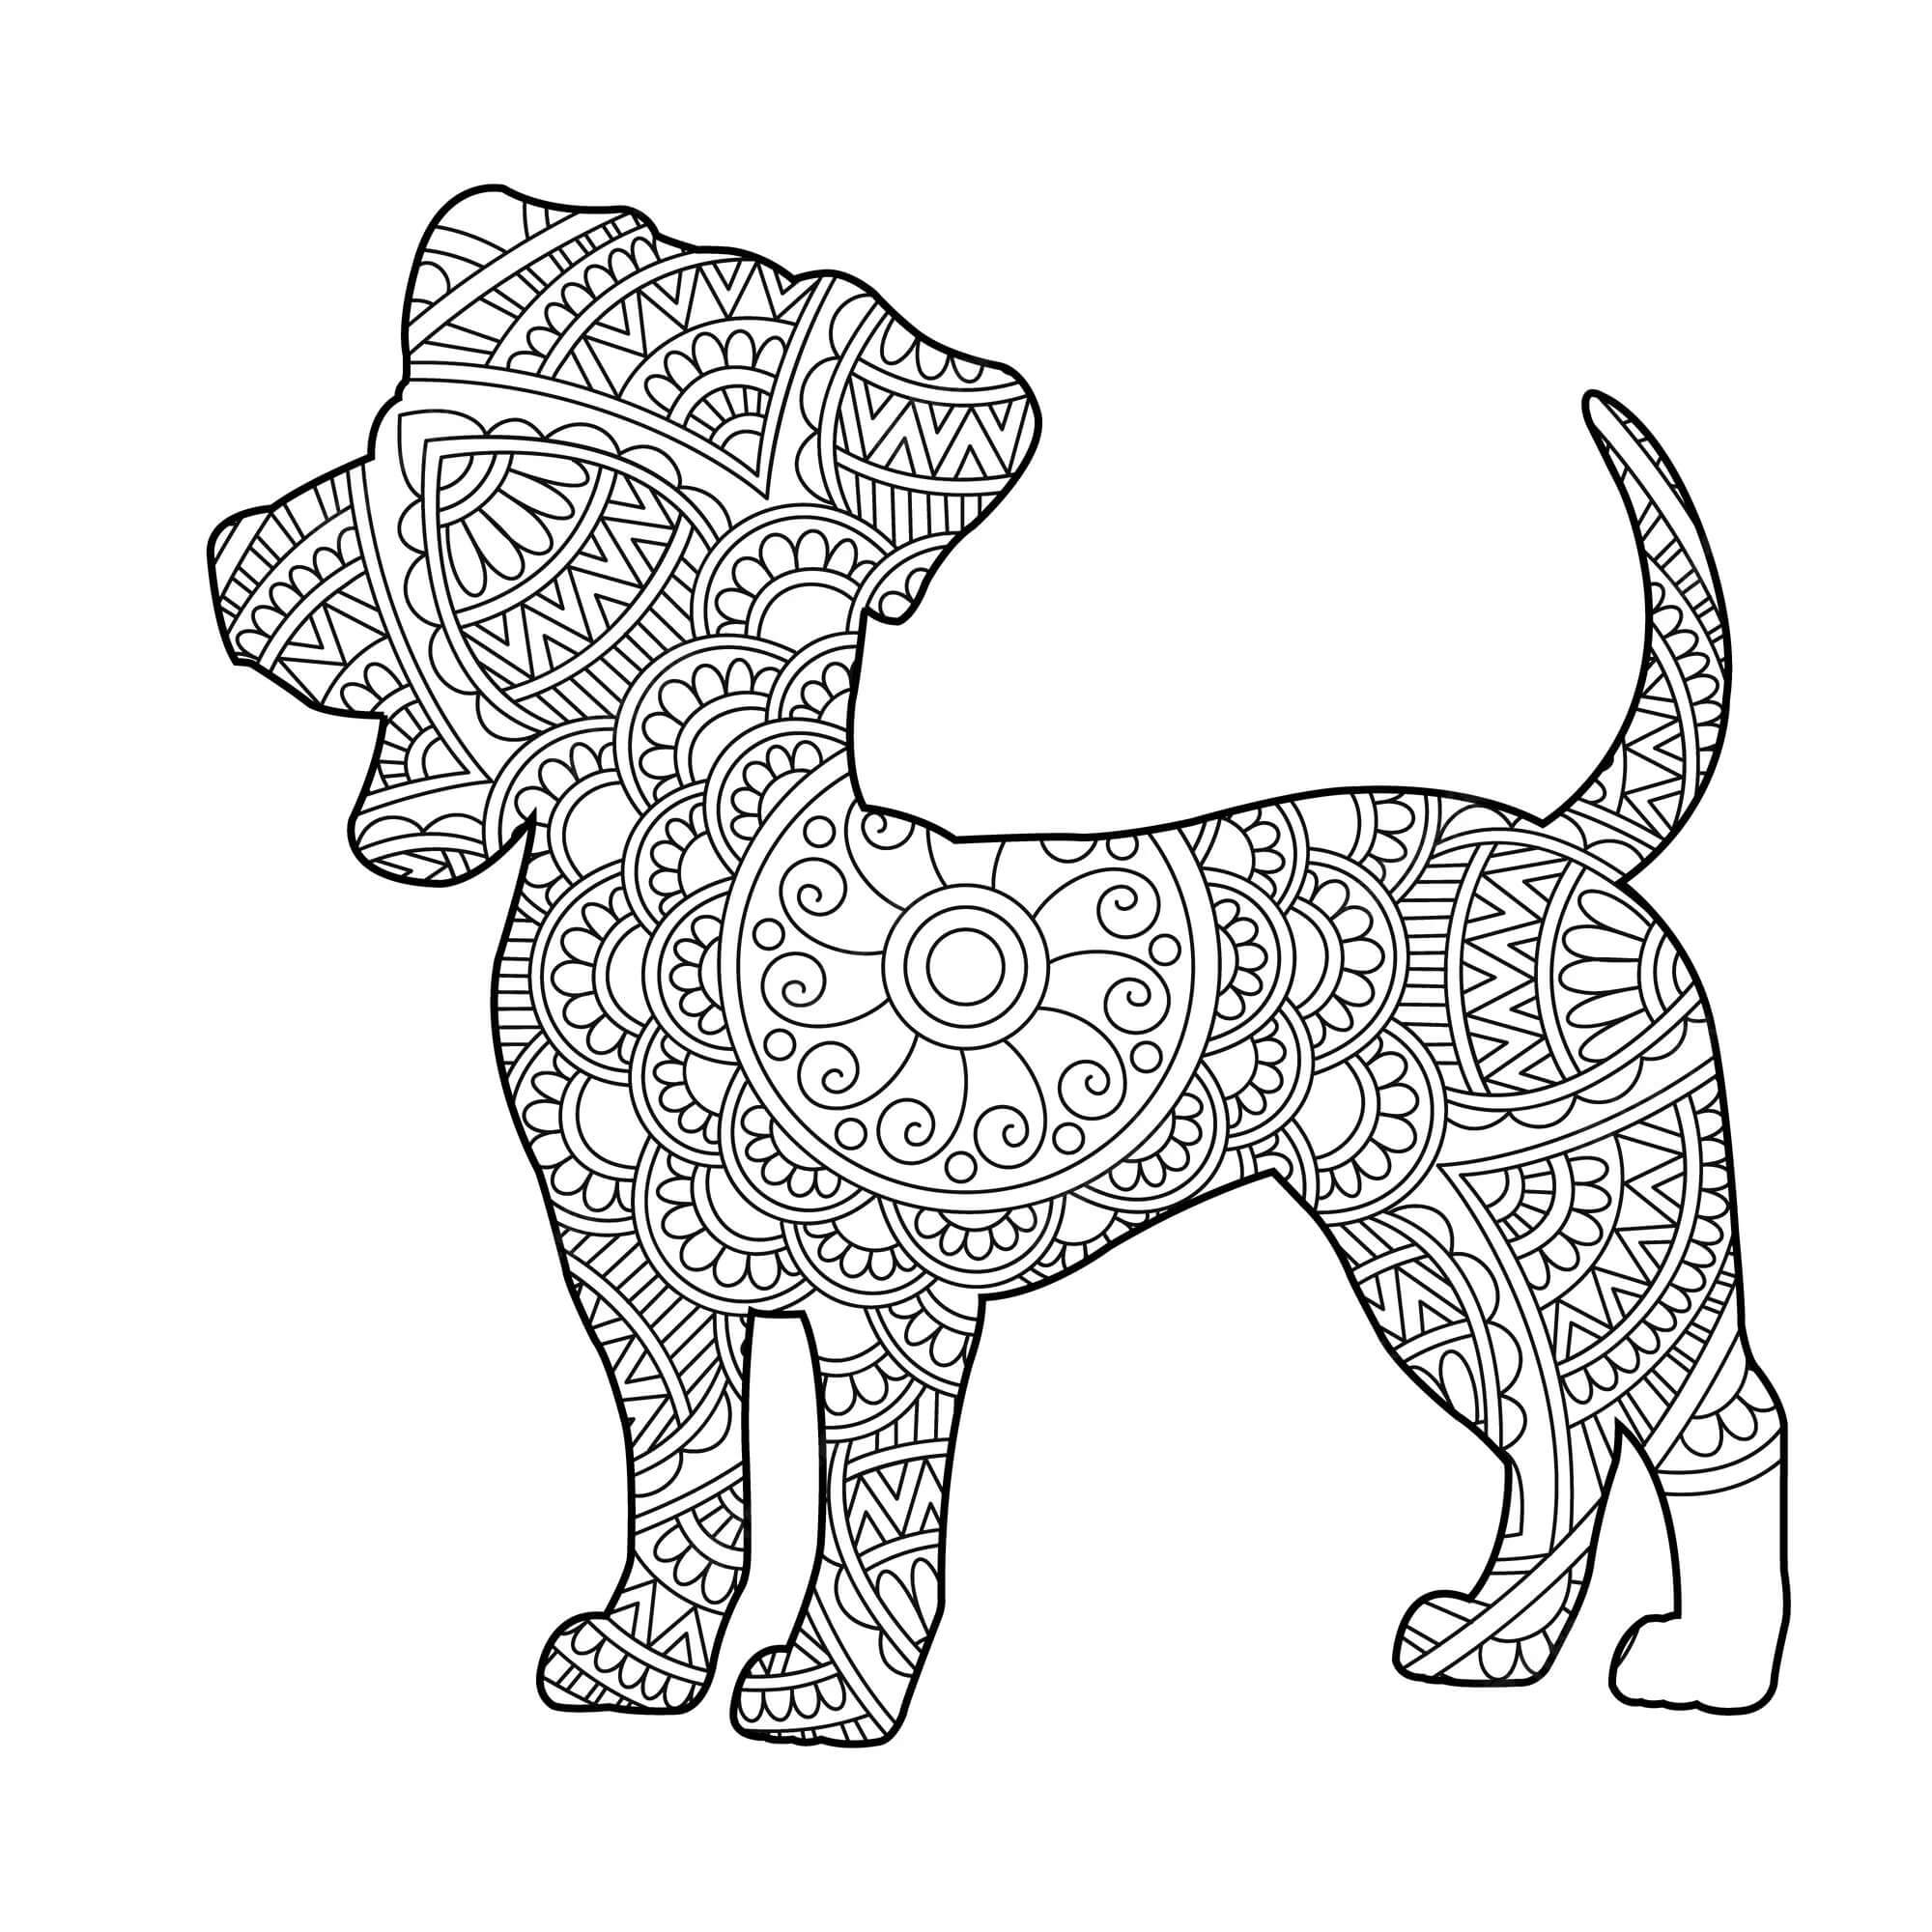 Mandala Dog Coloring Page - Sheet 8 Mandalas